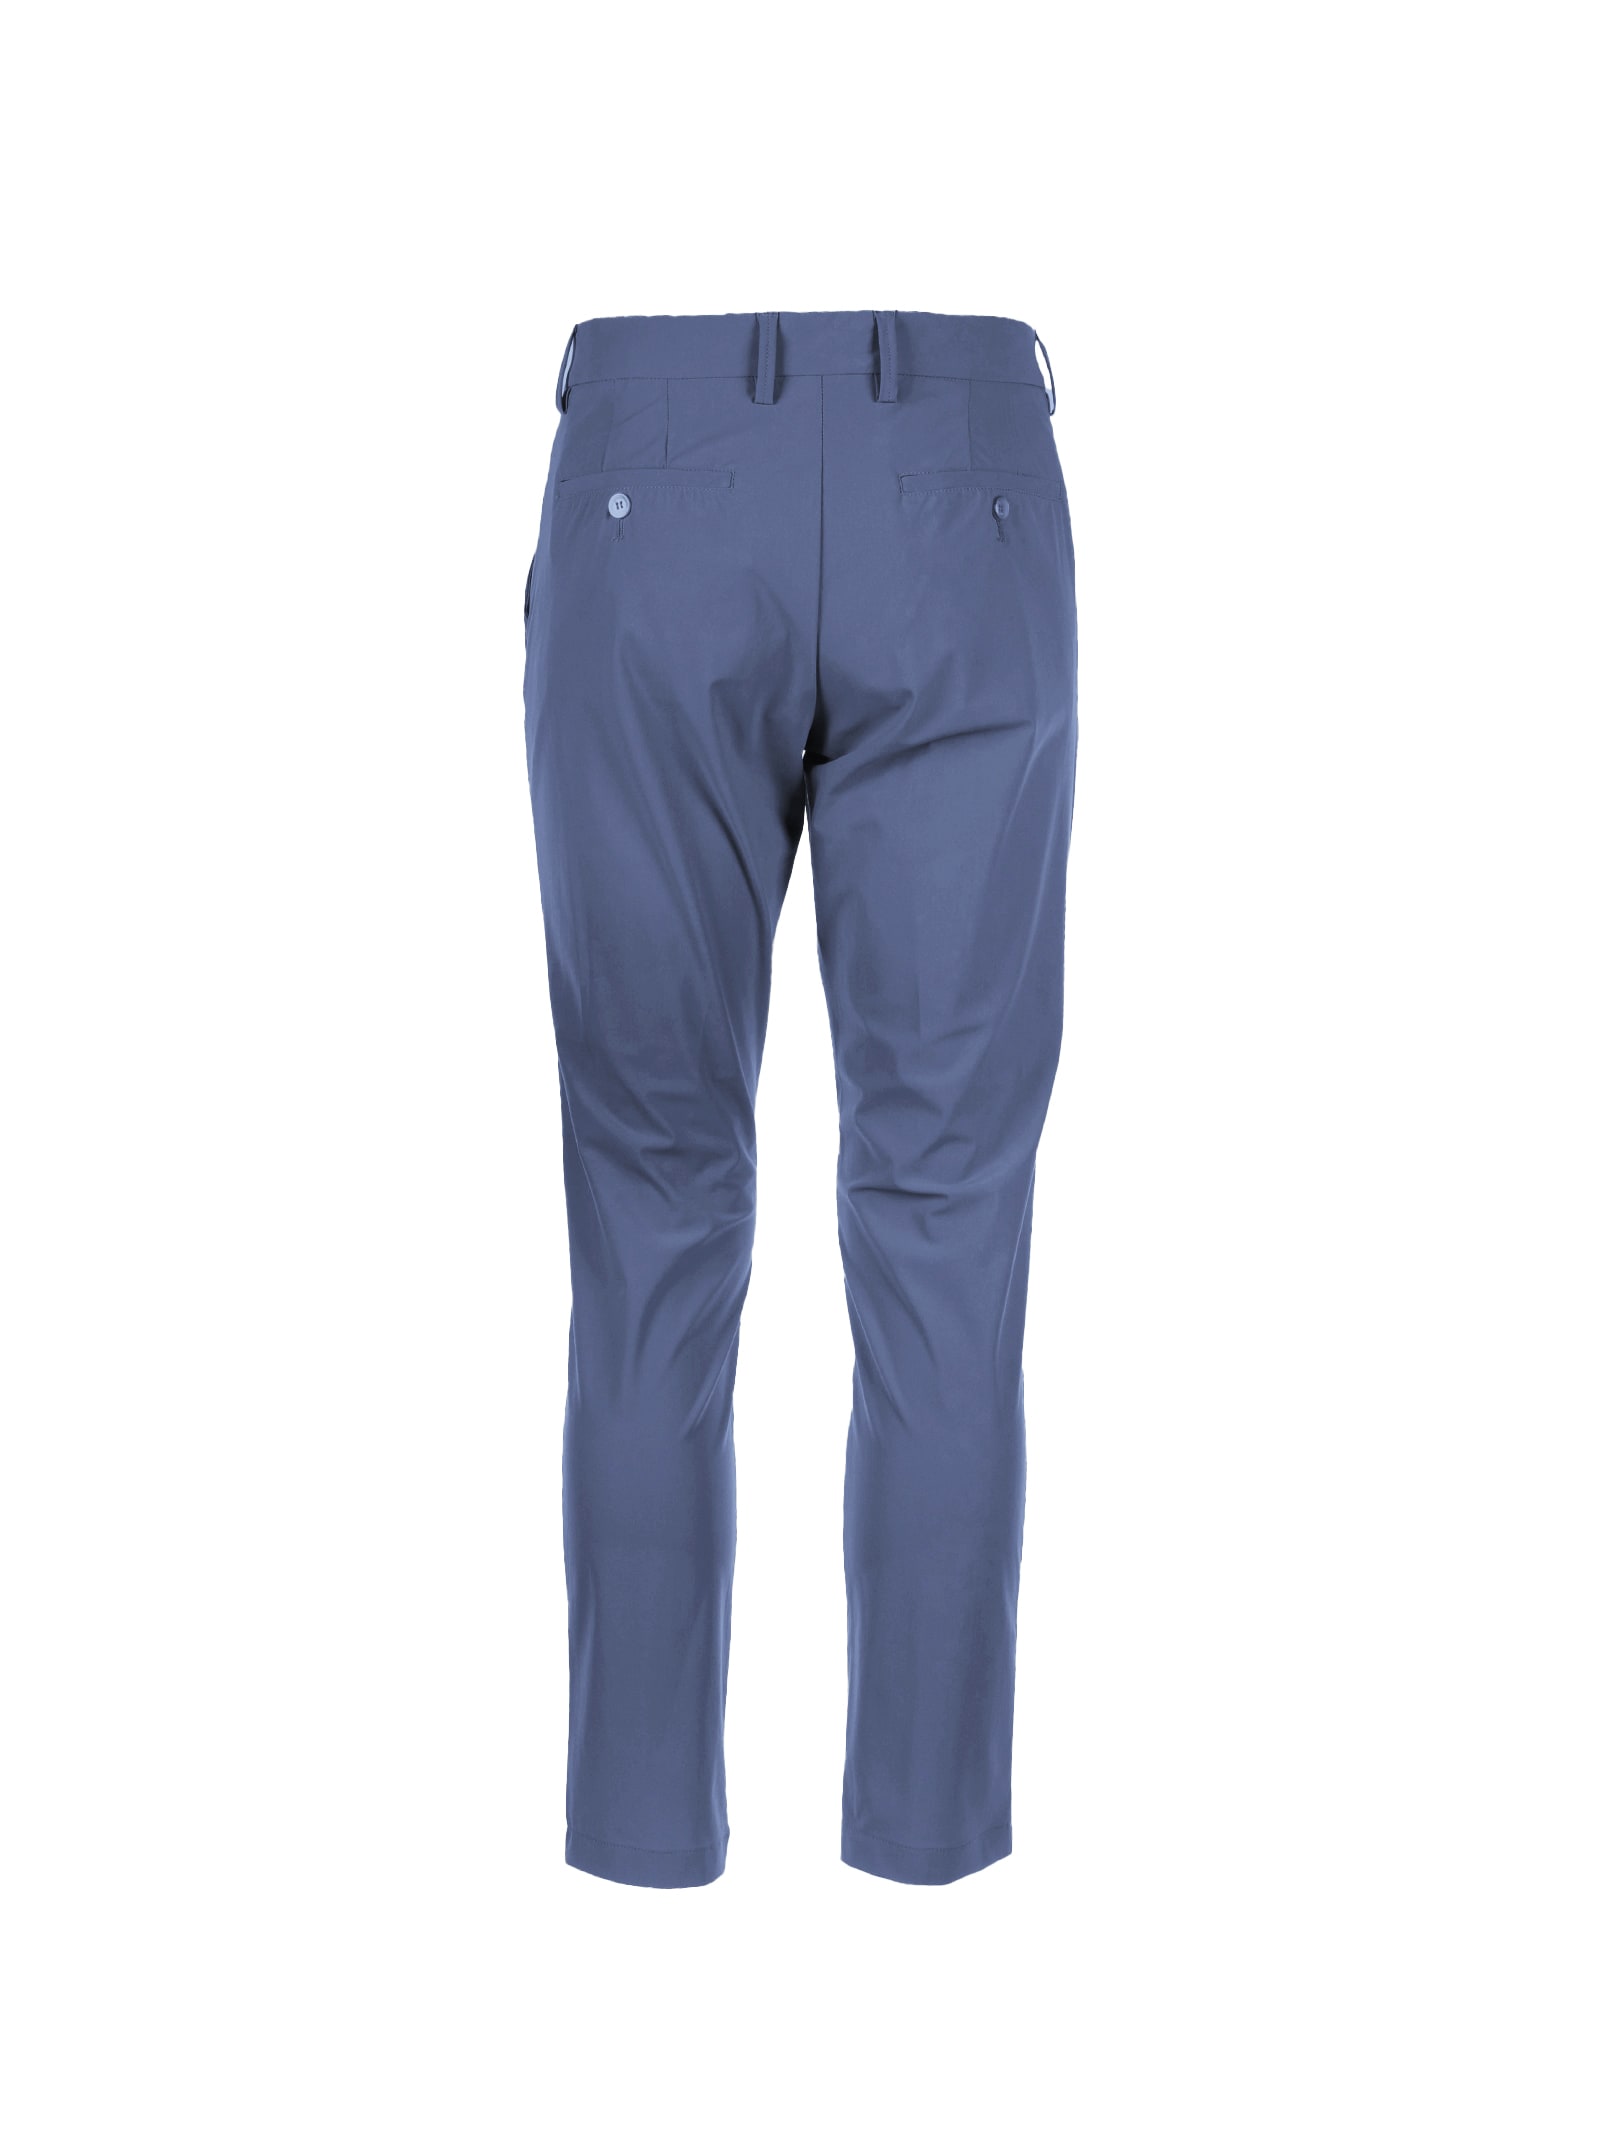 Shop Cruna Blue Brera Trousers